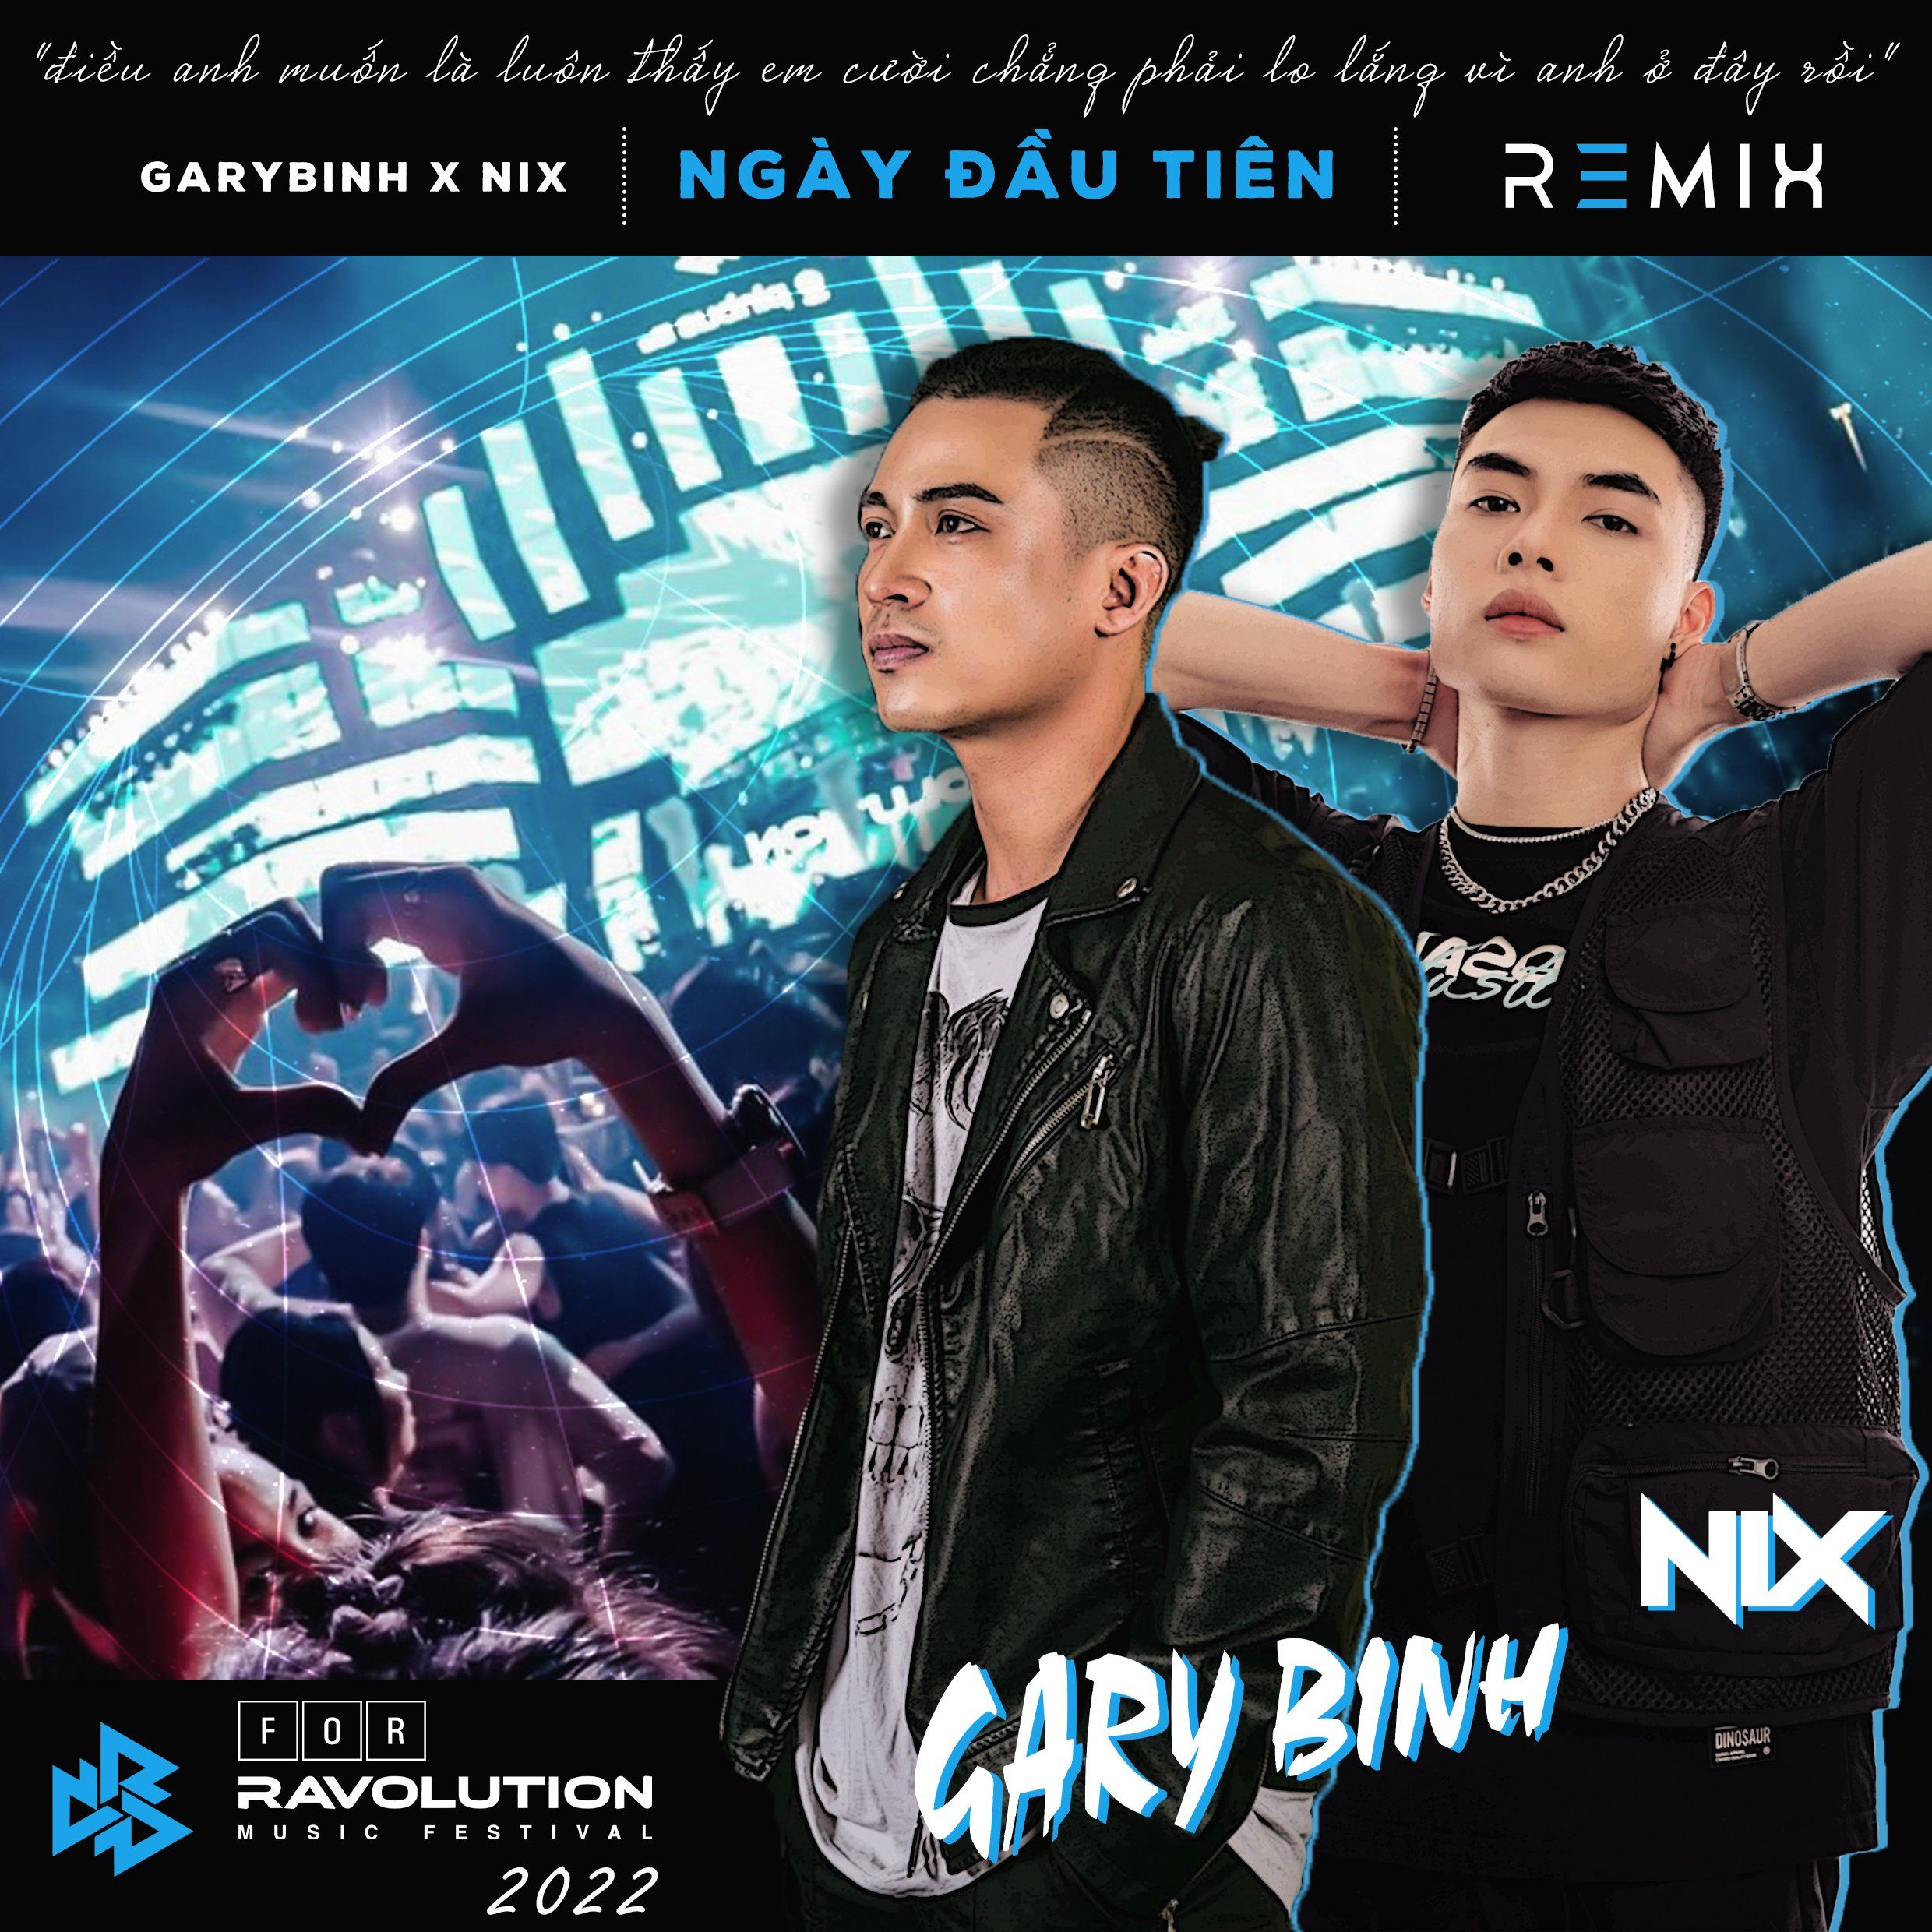 ਡਾਉਨਲੋਡ ਕਰੋ Đức Phúc - Ngày Đầu Tiên (Nix x Gary Bình Remix) [Ravolution Music Festival Version]